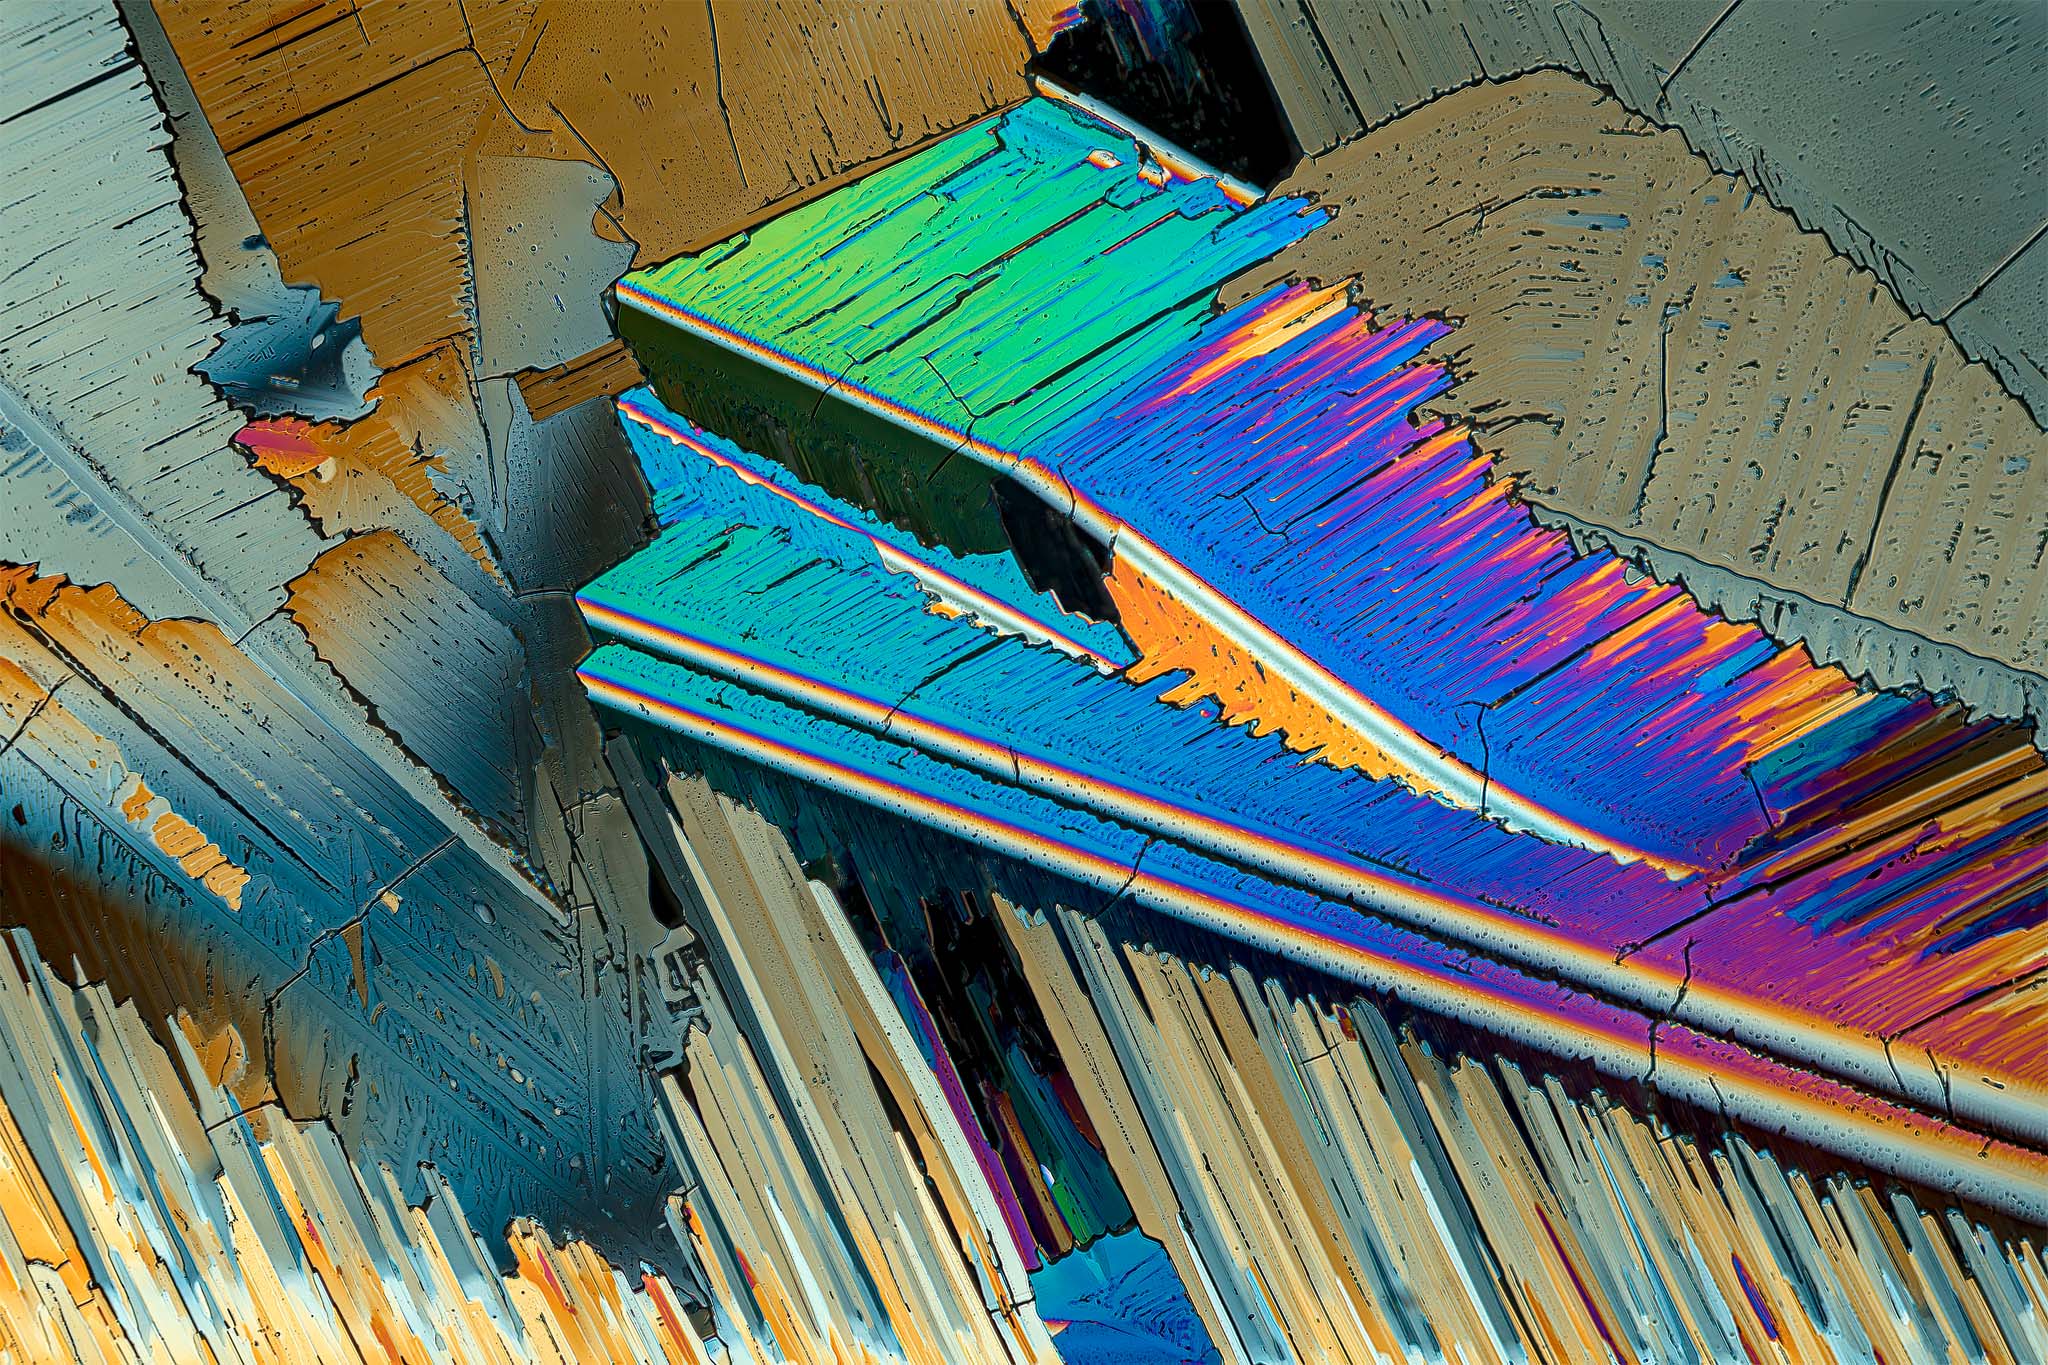 Schwefel in einer Vergrößerung von 250:1, Mikro Kristall im polarisierten Licht.